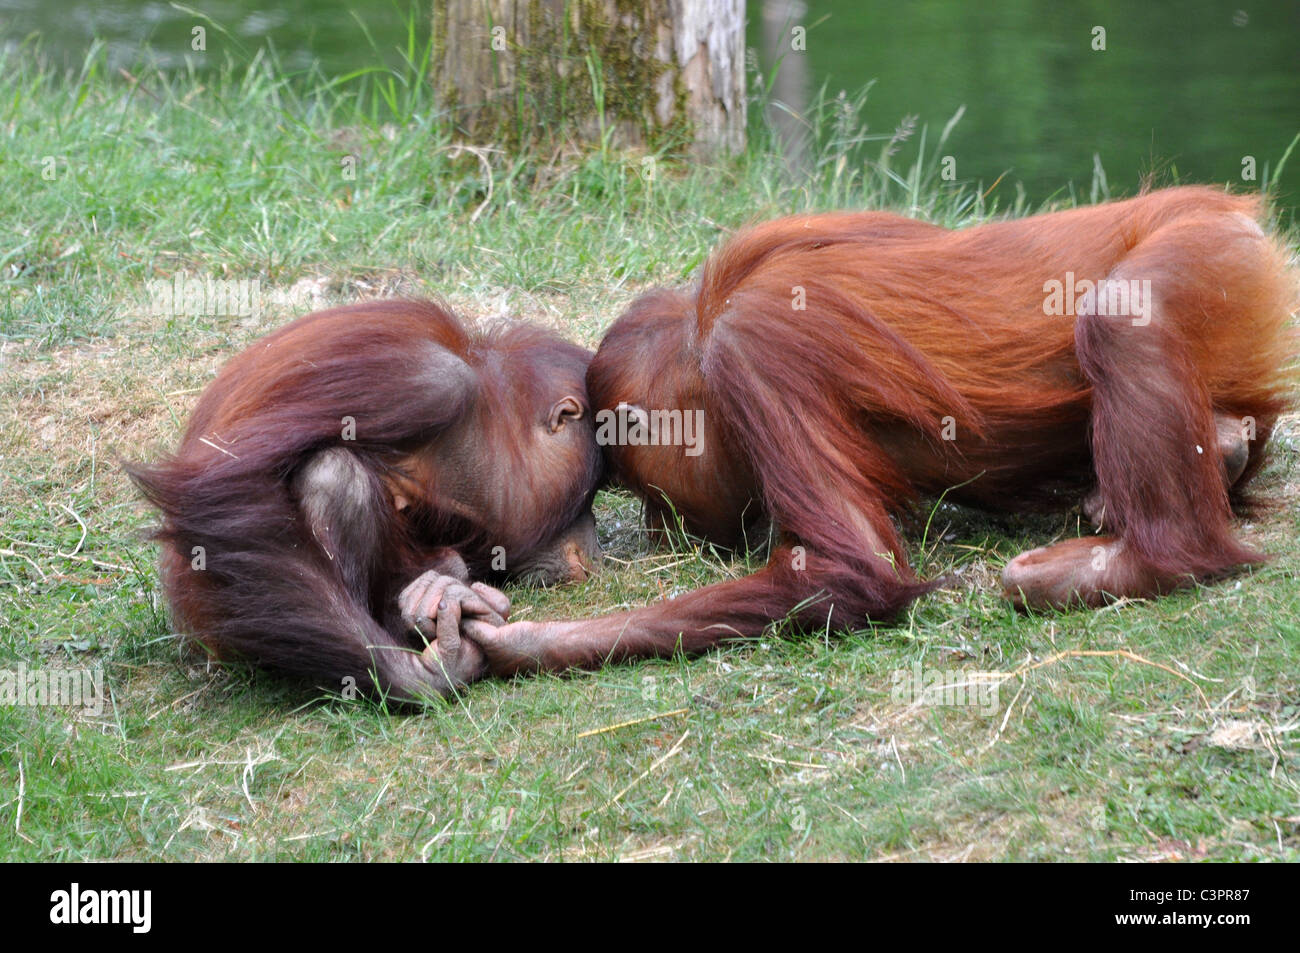 Les orangs-outans se tenant la main sur une rencontre rapprochée Banque D'Images